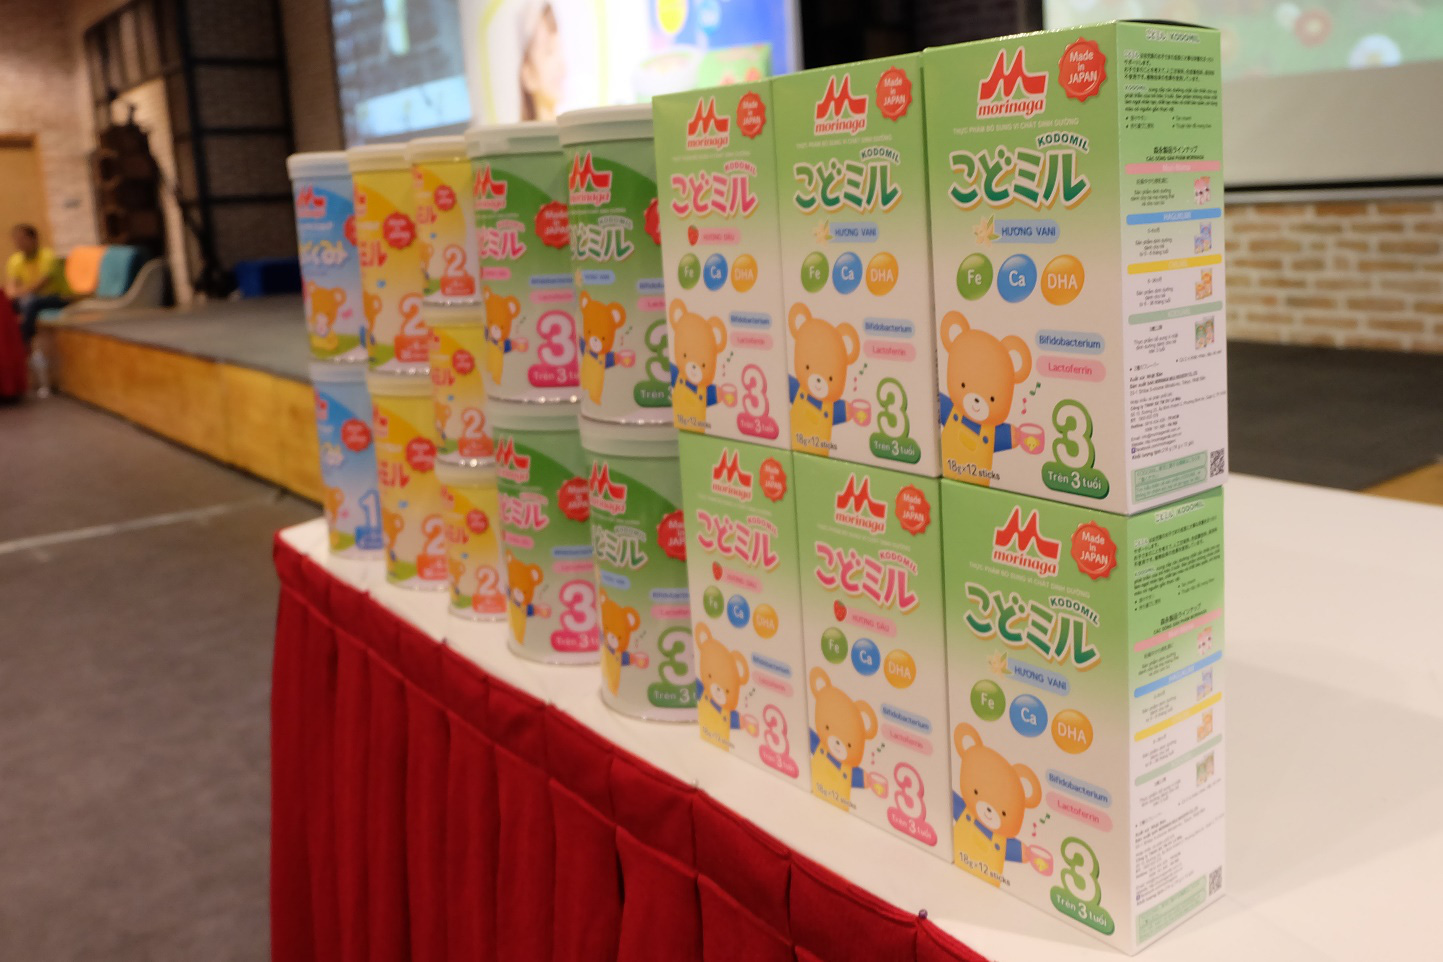 Tập đoàn Morinaga Nhật Bản ra mắt sản phẩm thực phẩm bổ sung dinh dưỡng cho bé trên 3 tuổi - Ảnh 1.